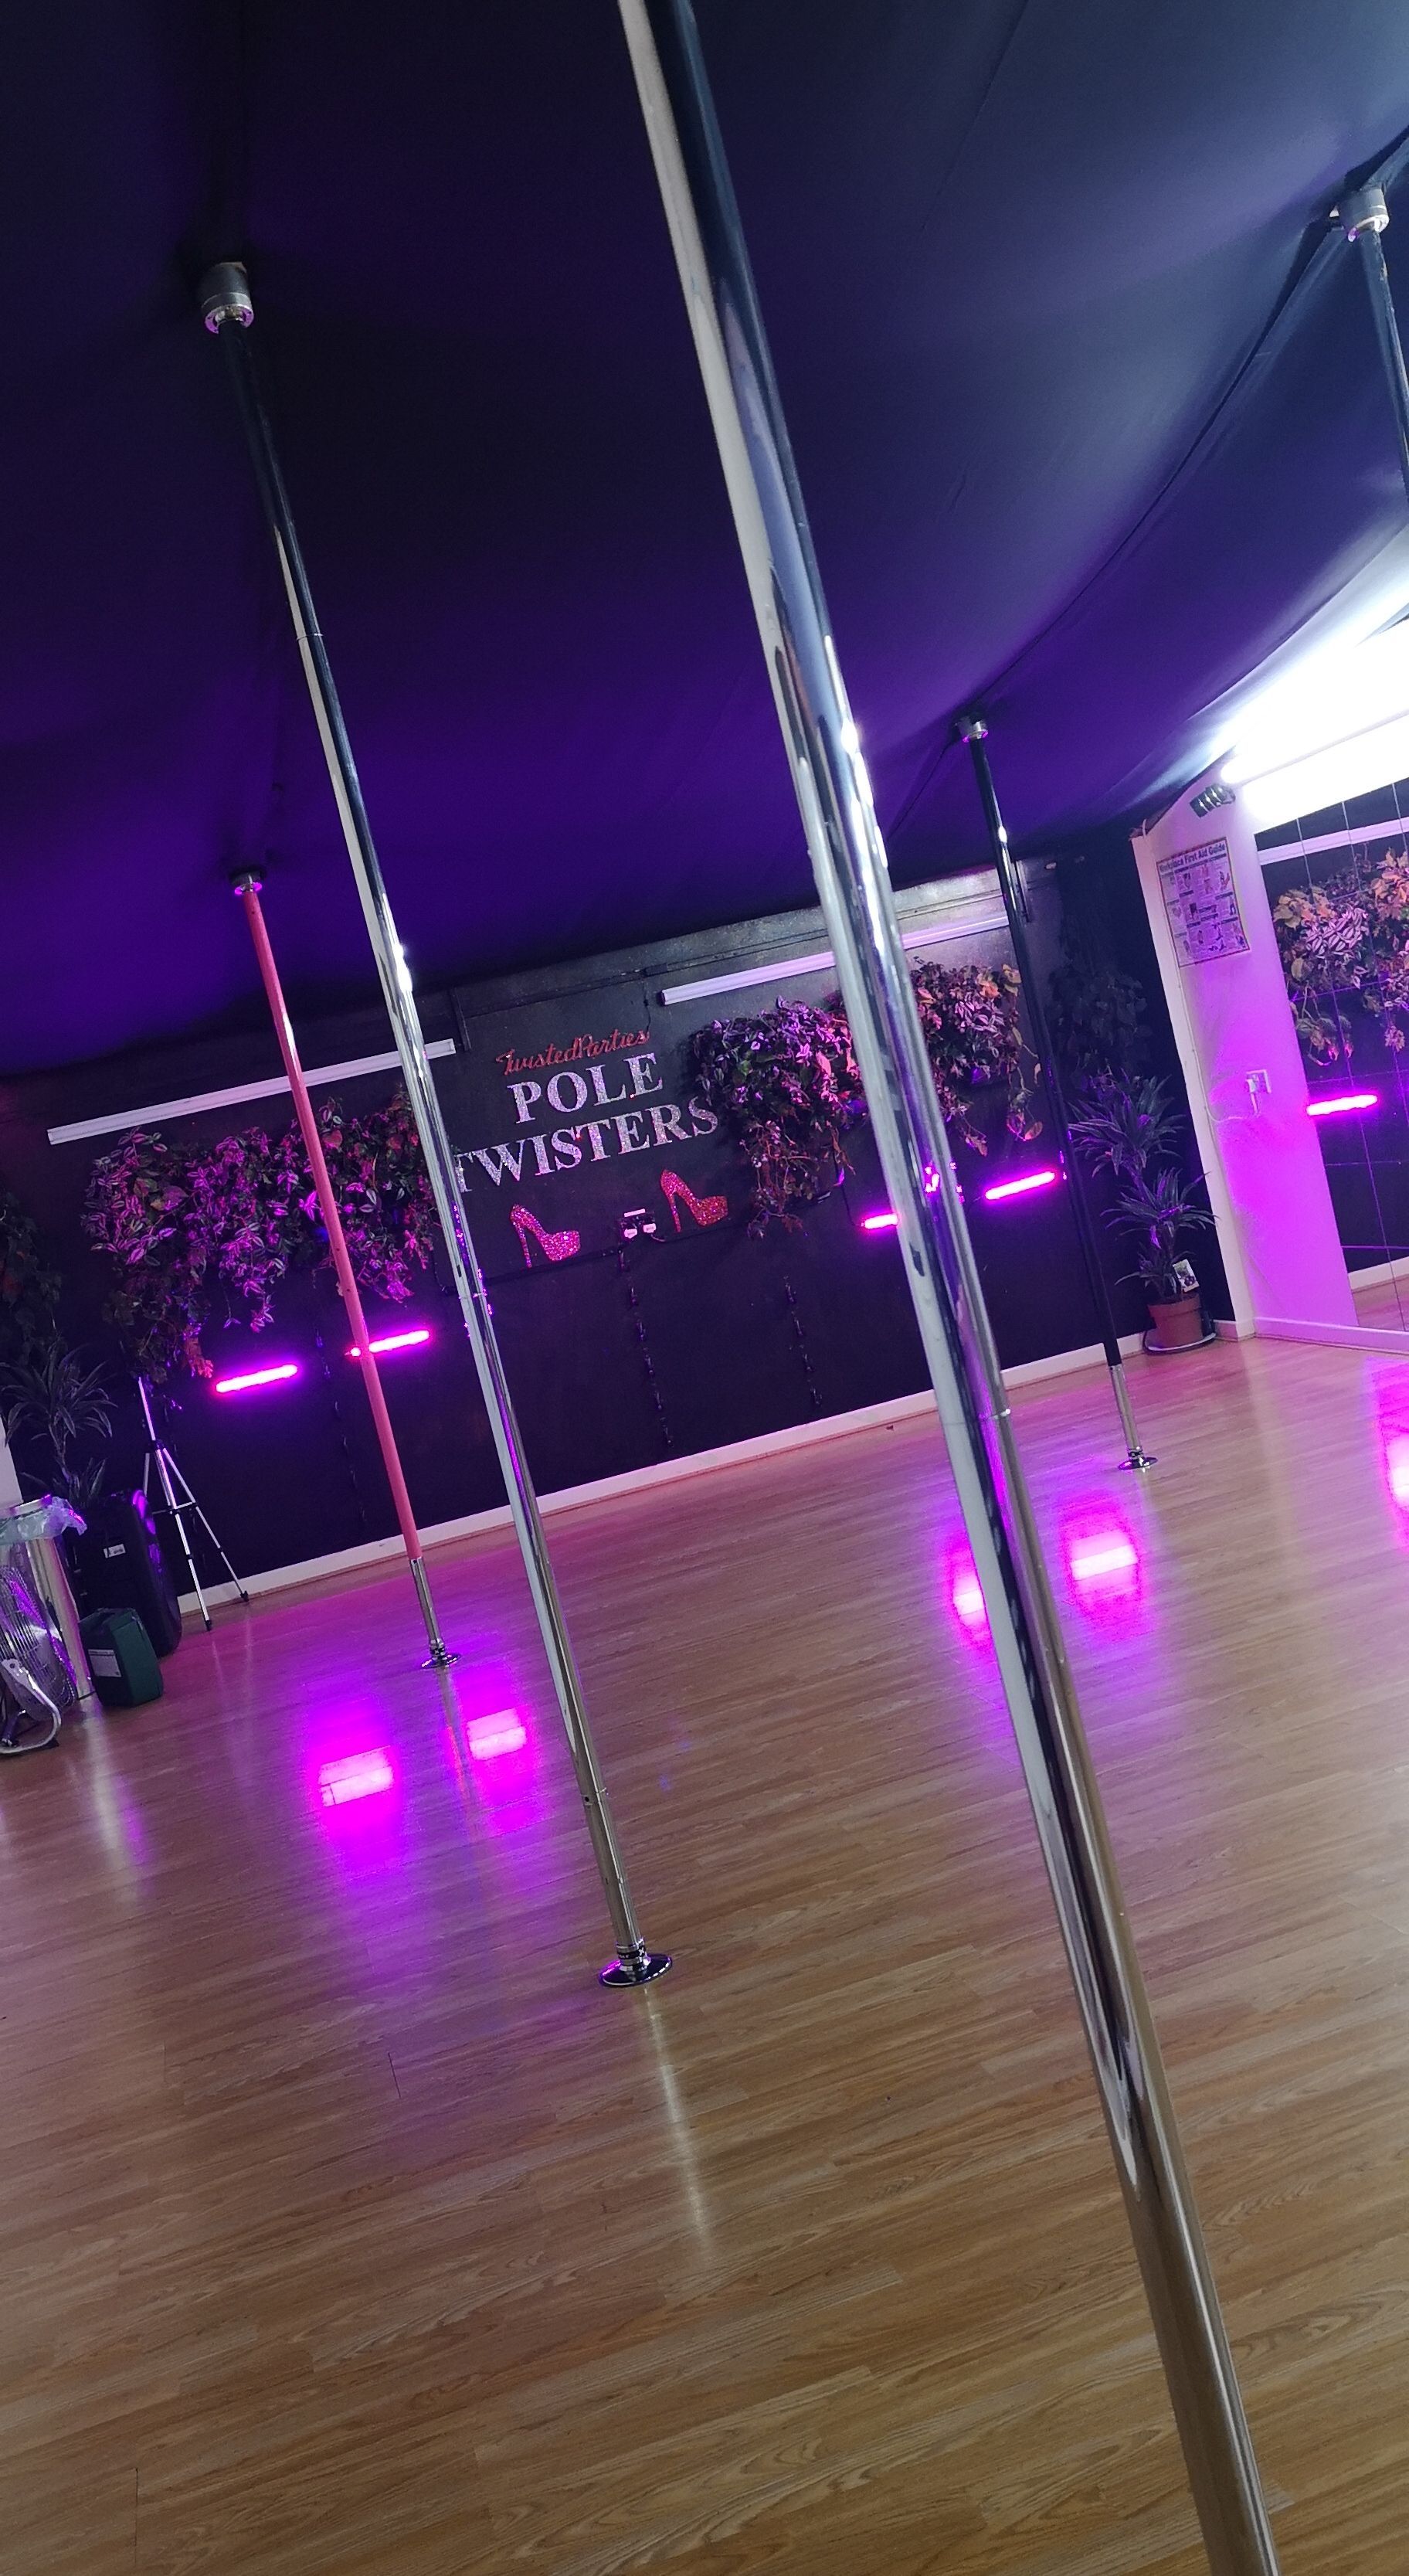 Our beautiful pole dancing studio in Cardiff